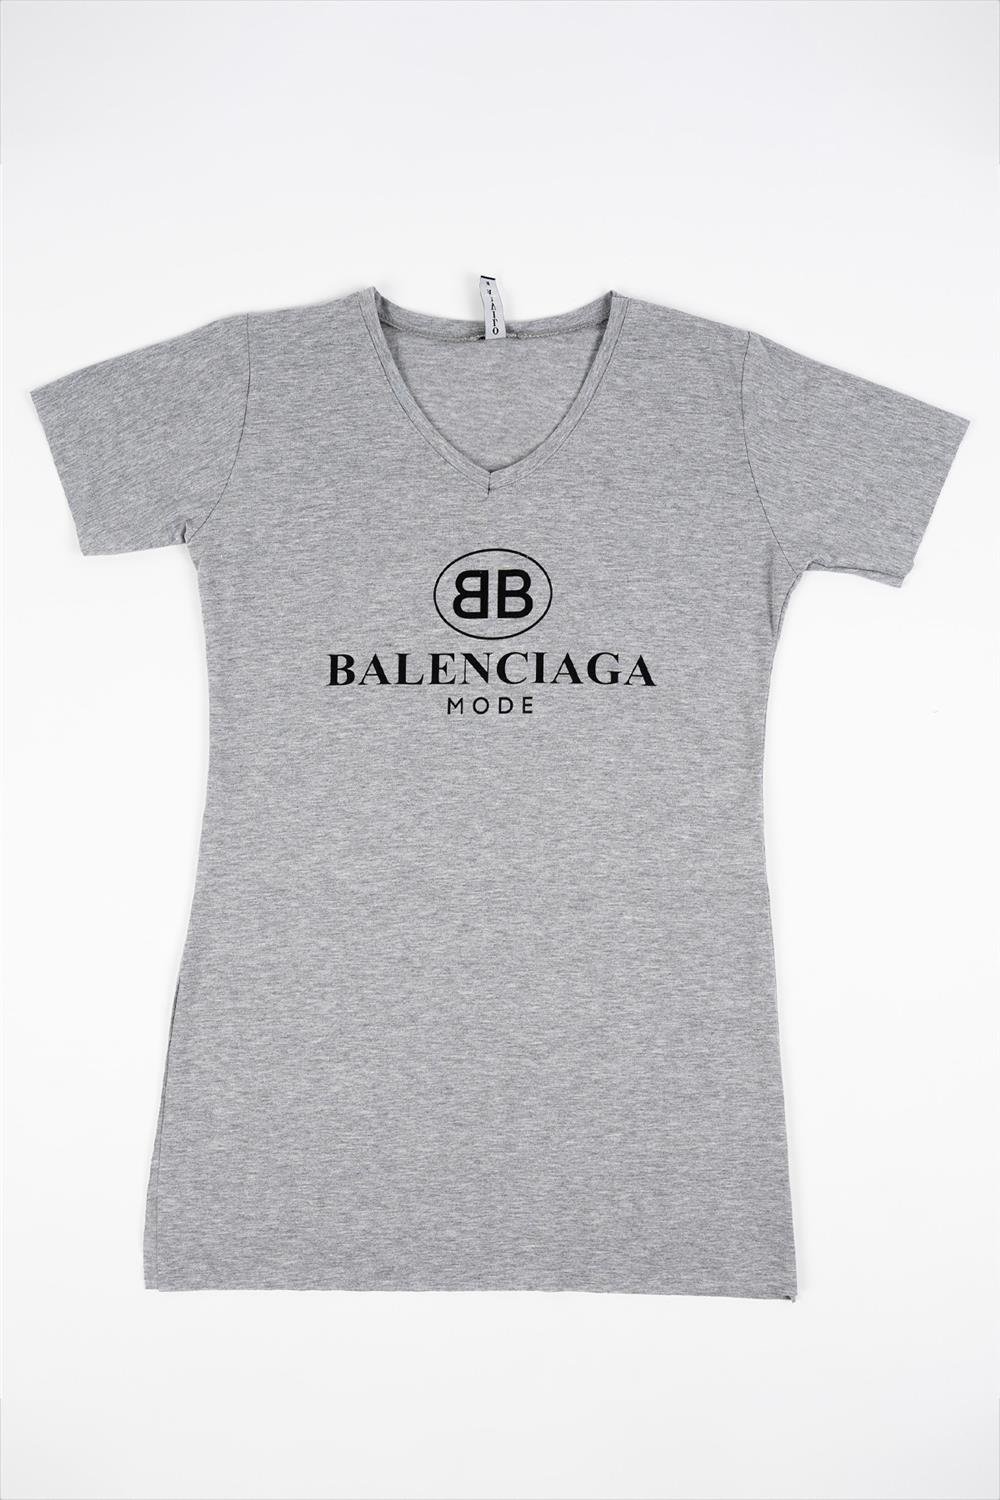 Kadın Gri V Yaka Balenciaga Tişört